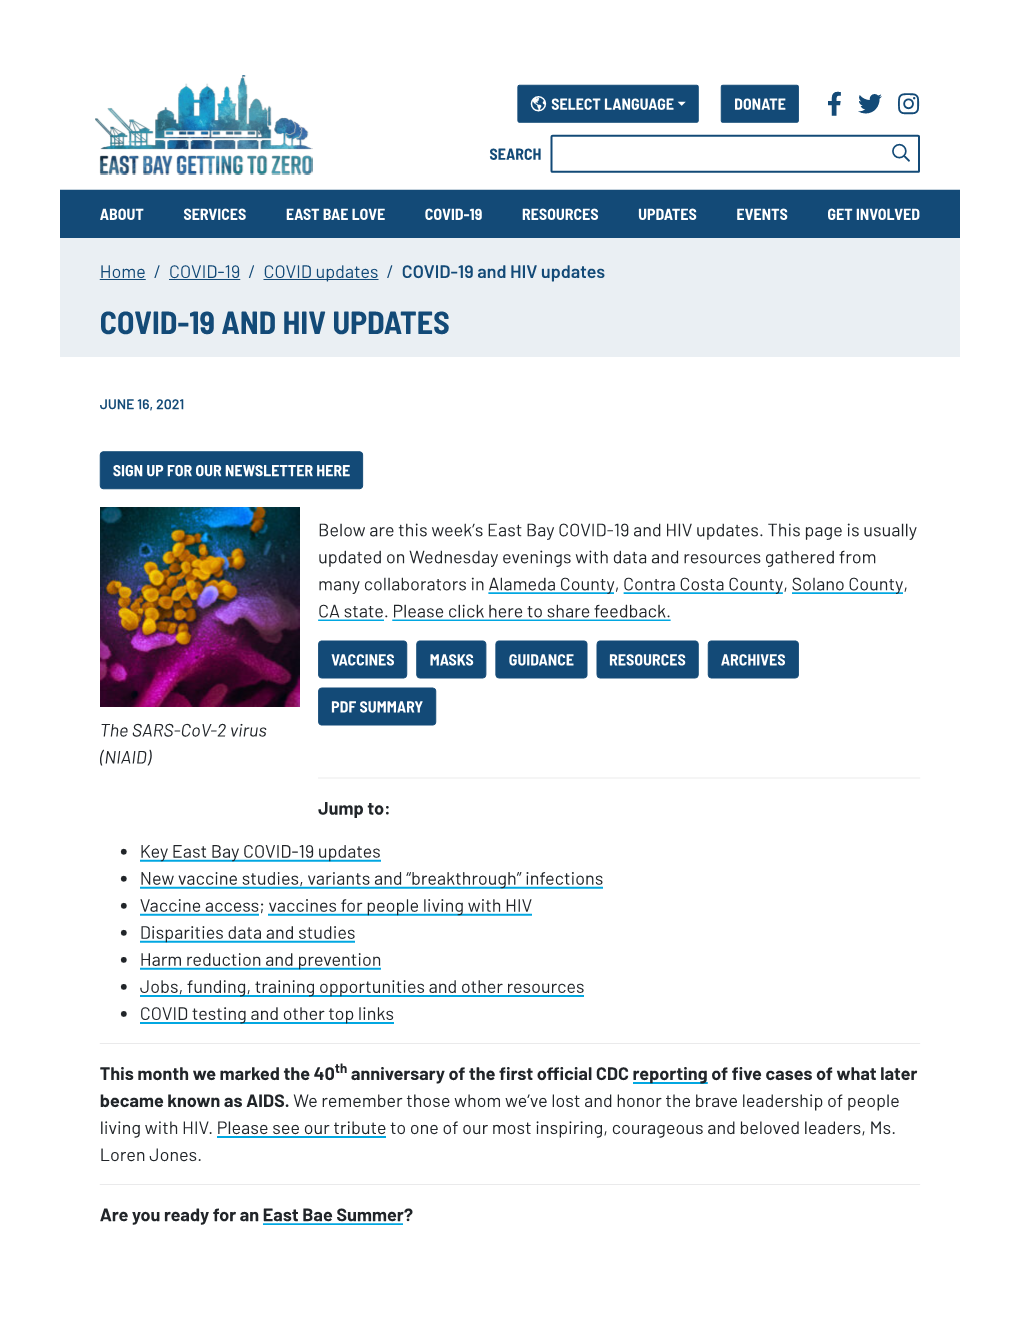 June 16, 2021 COVID+HIV Update